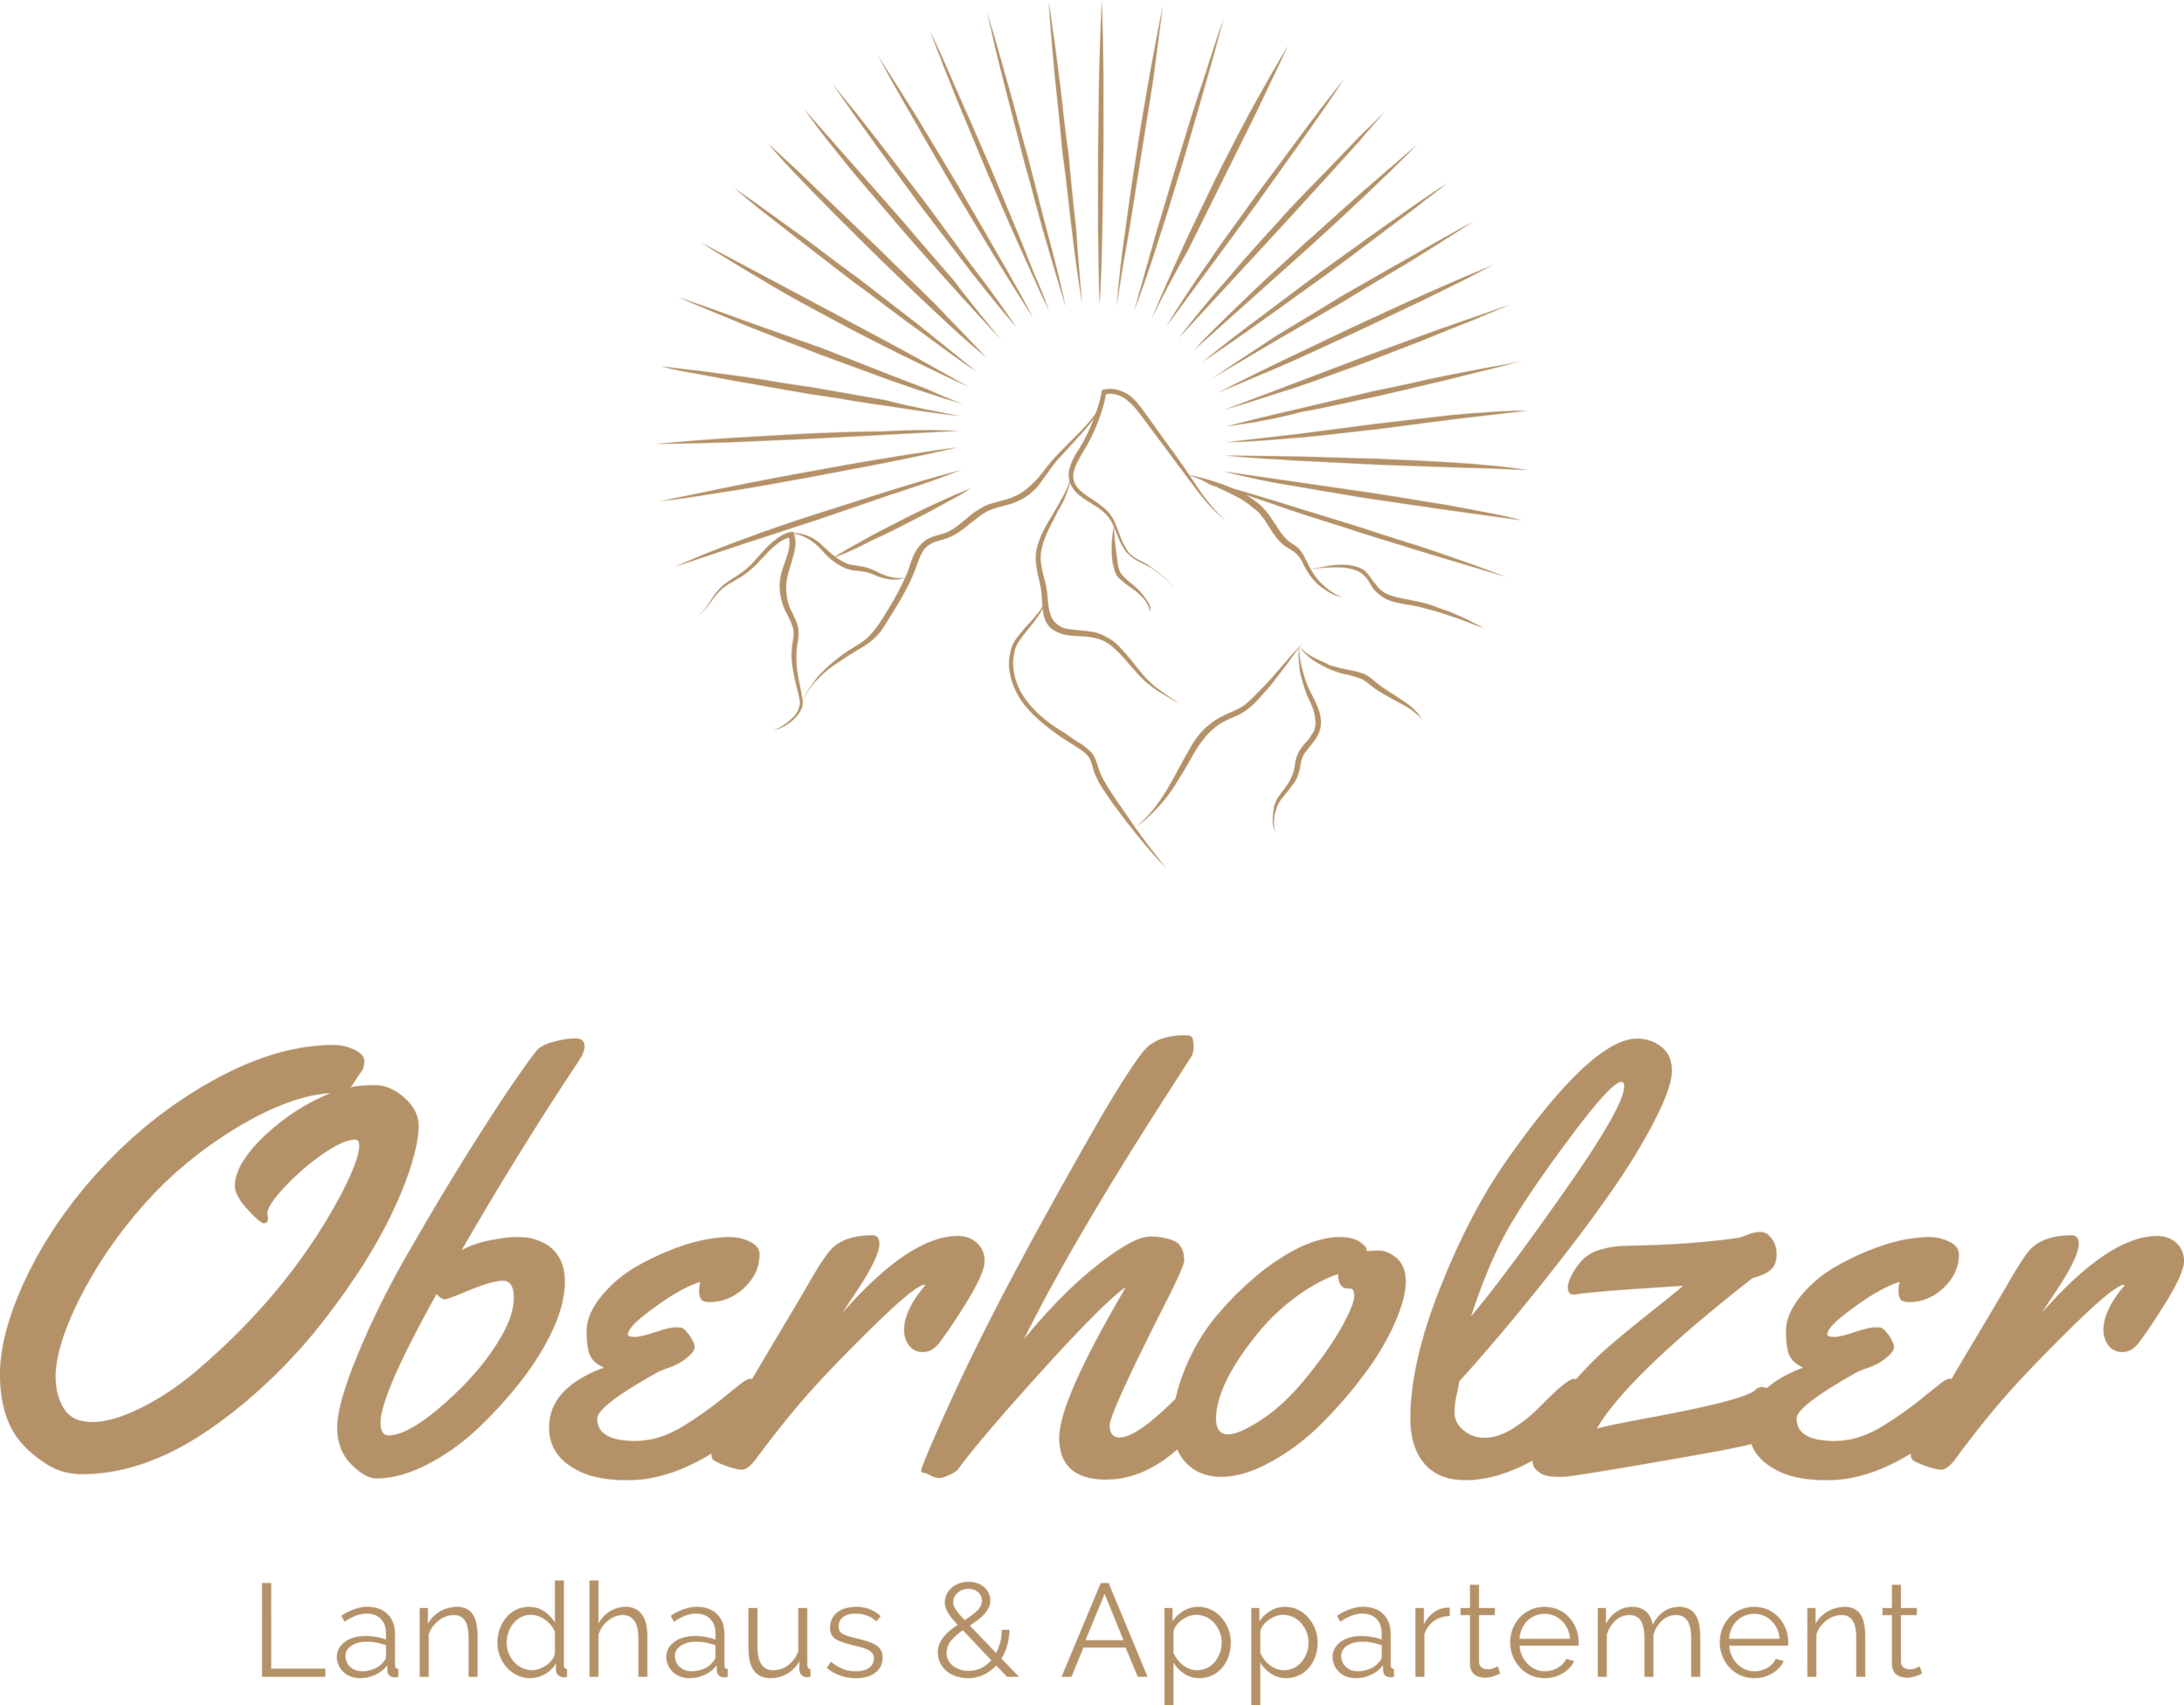 www.landhaus-oberholzer.at